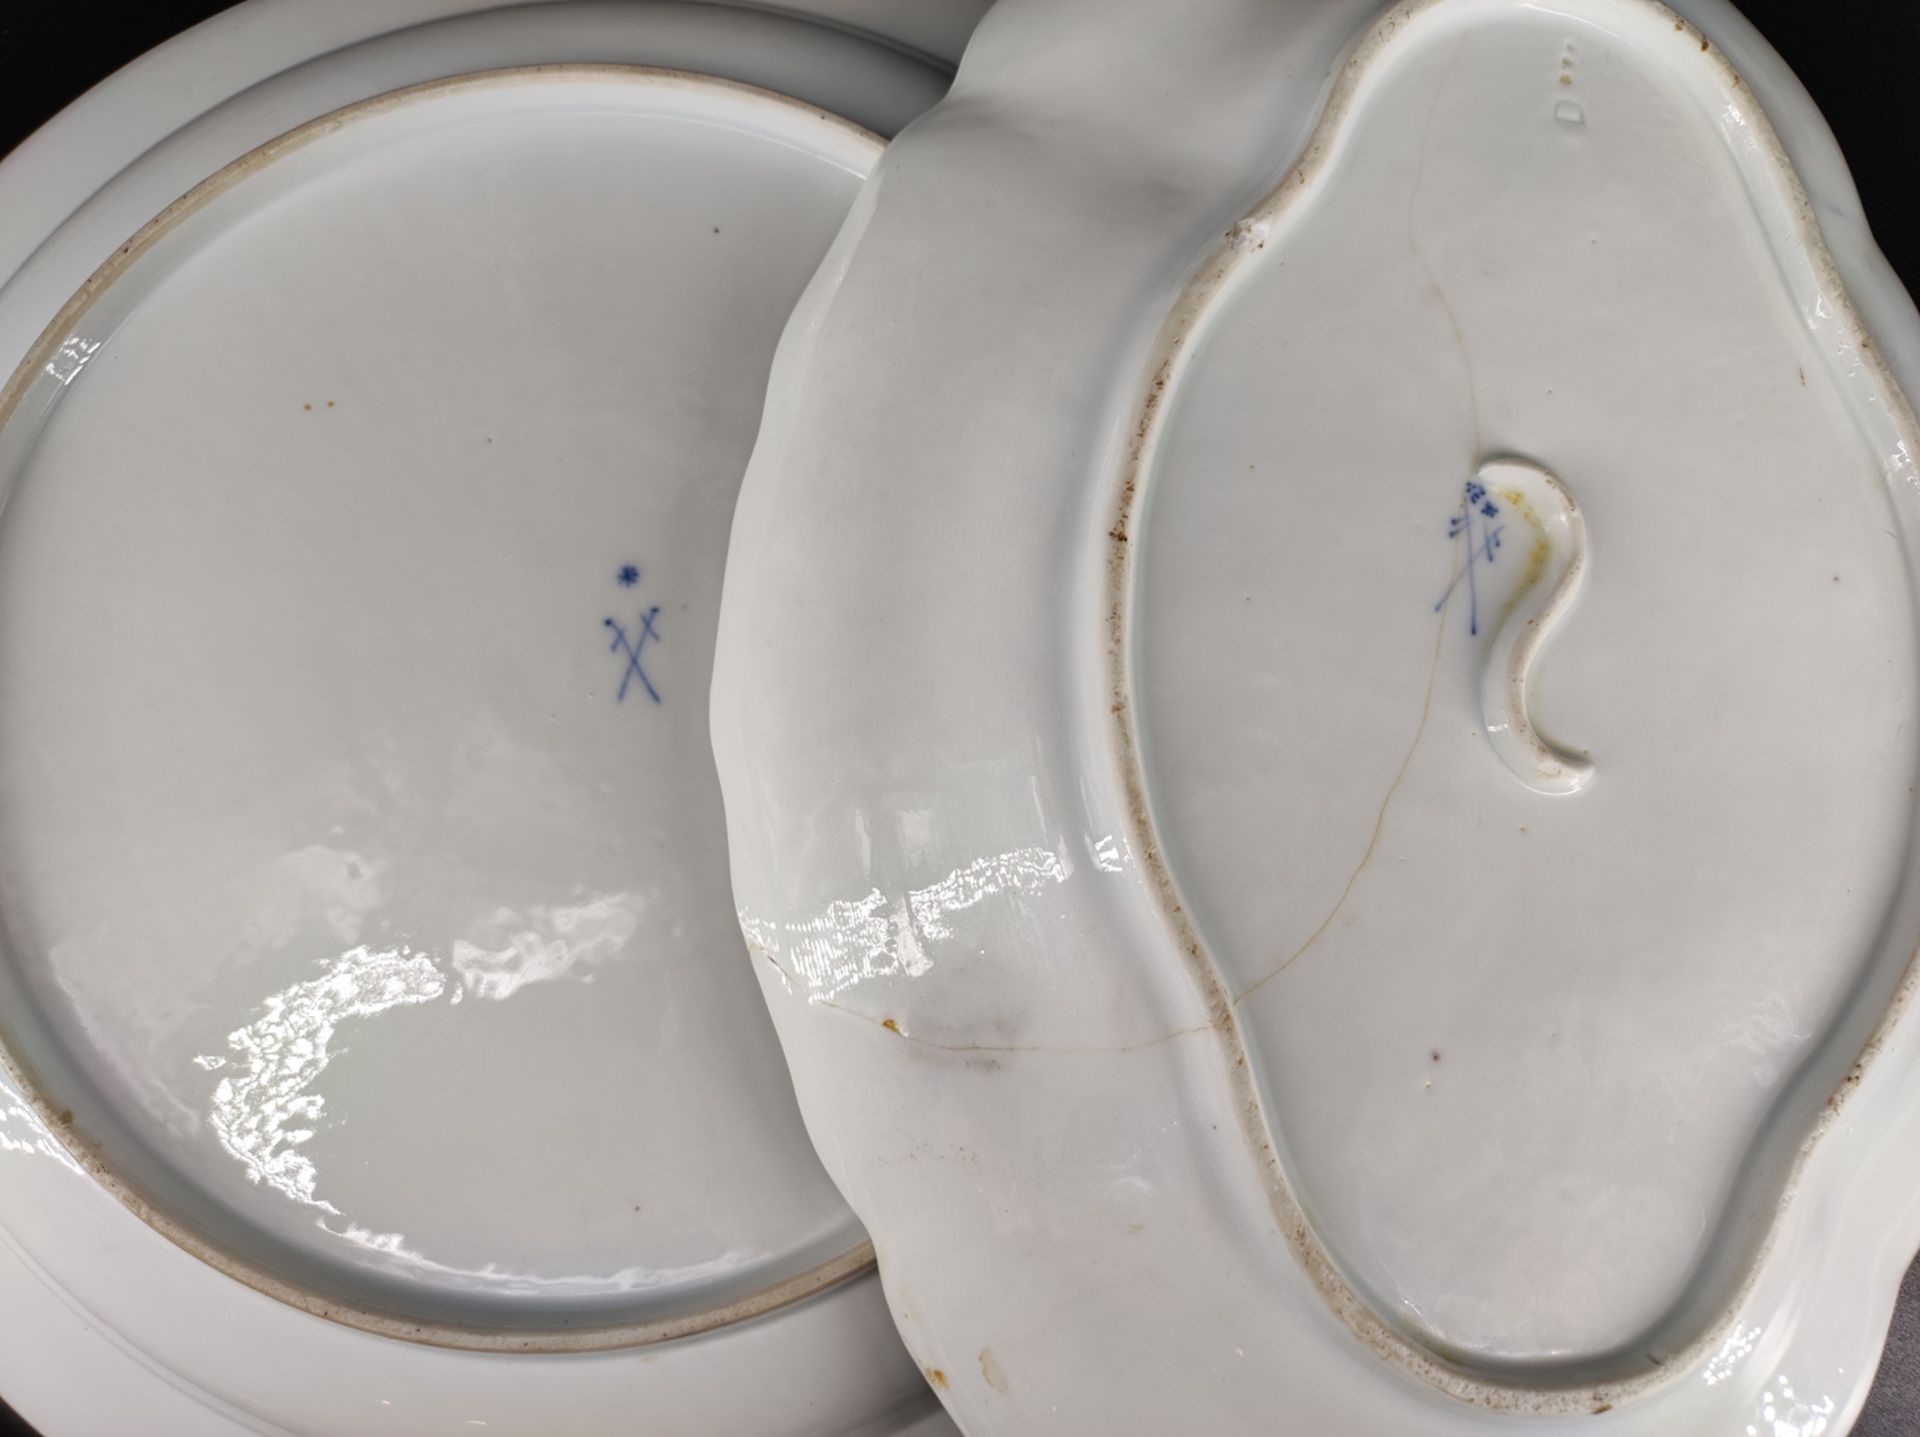 2 barocke Meissen Geschirrteile, ovale Platte und runder Teller, ovale Platte Schwertermarke mit 2 - Bild 2 aus 2